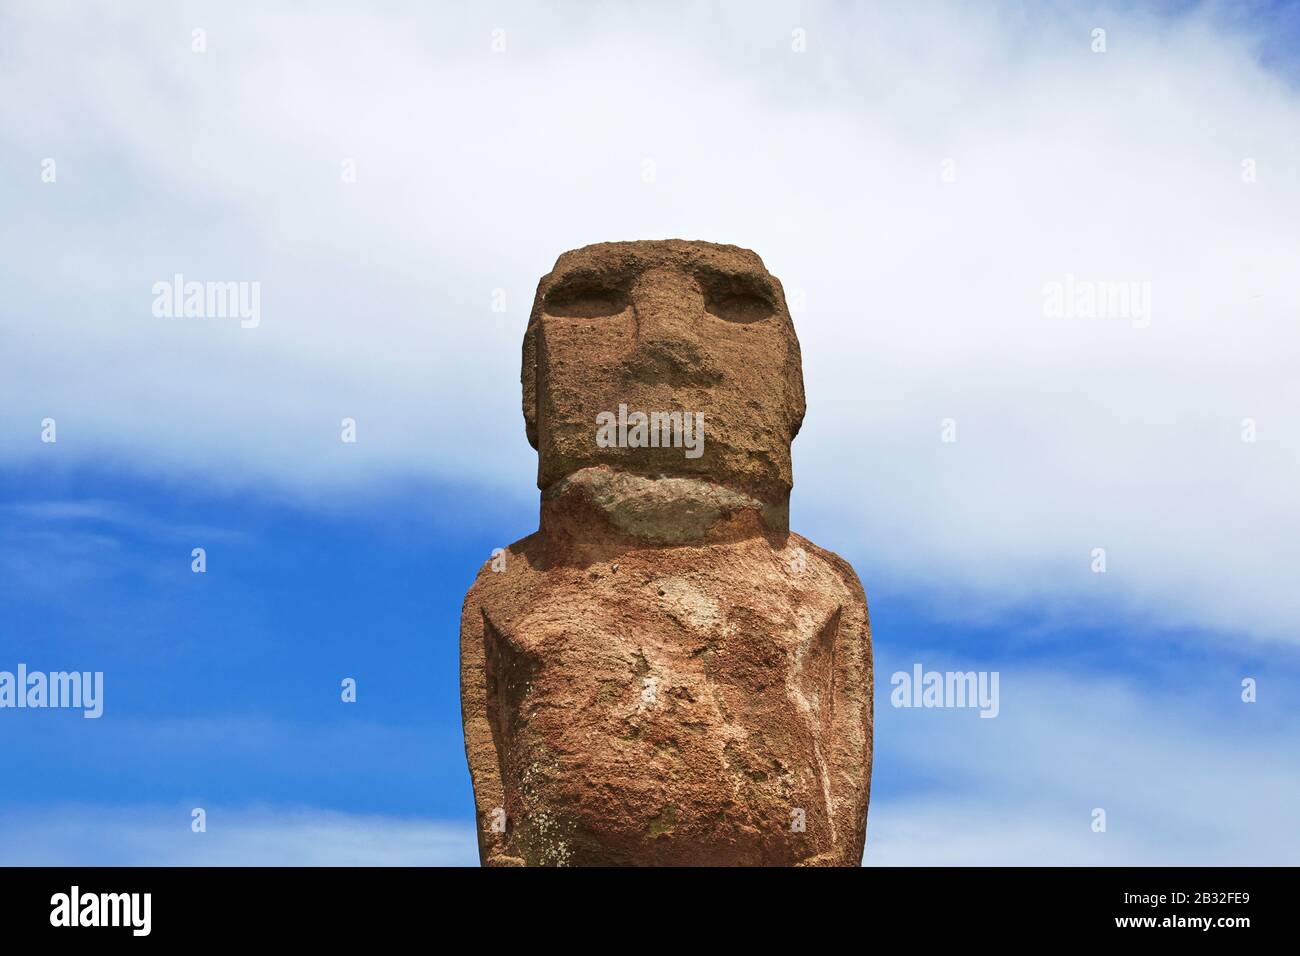 Rapa Nui, Ahu Riata. The statue Moai in the marina of Hanga Roa on Easter Island, Chile Stock Photo